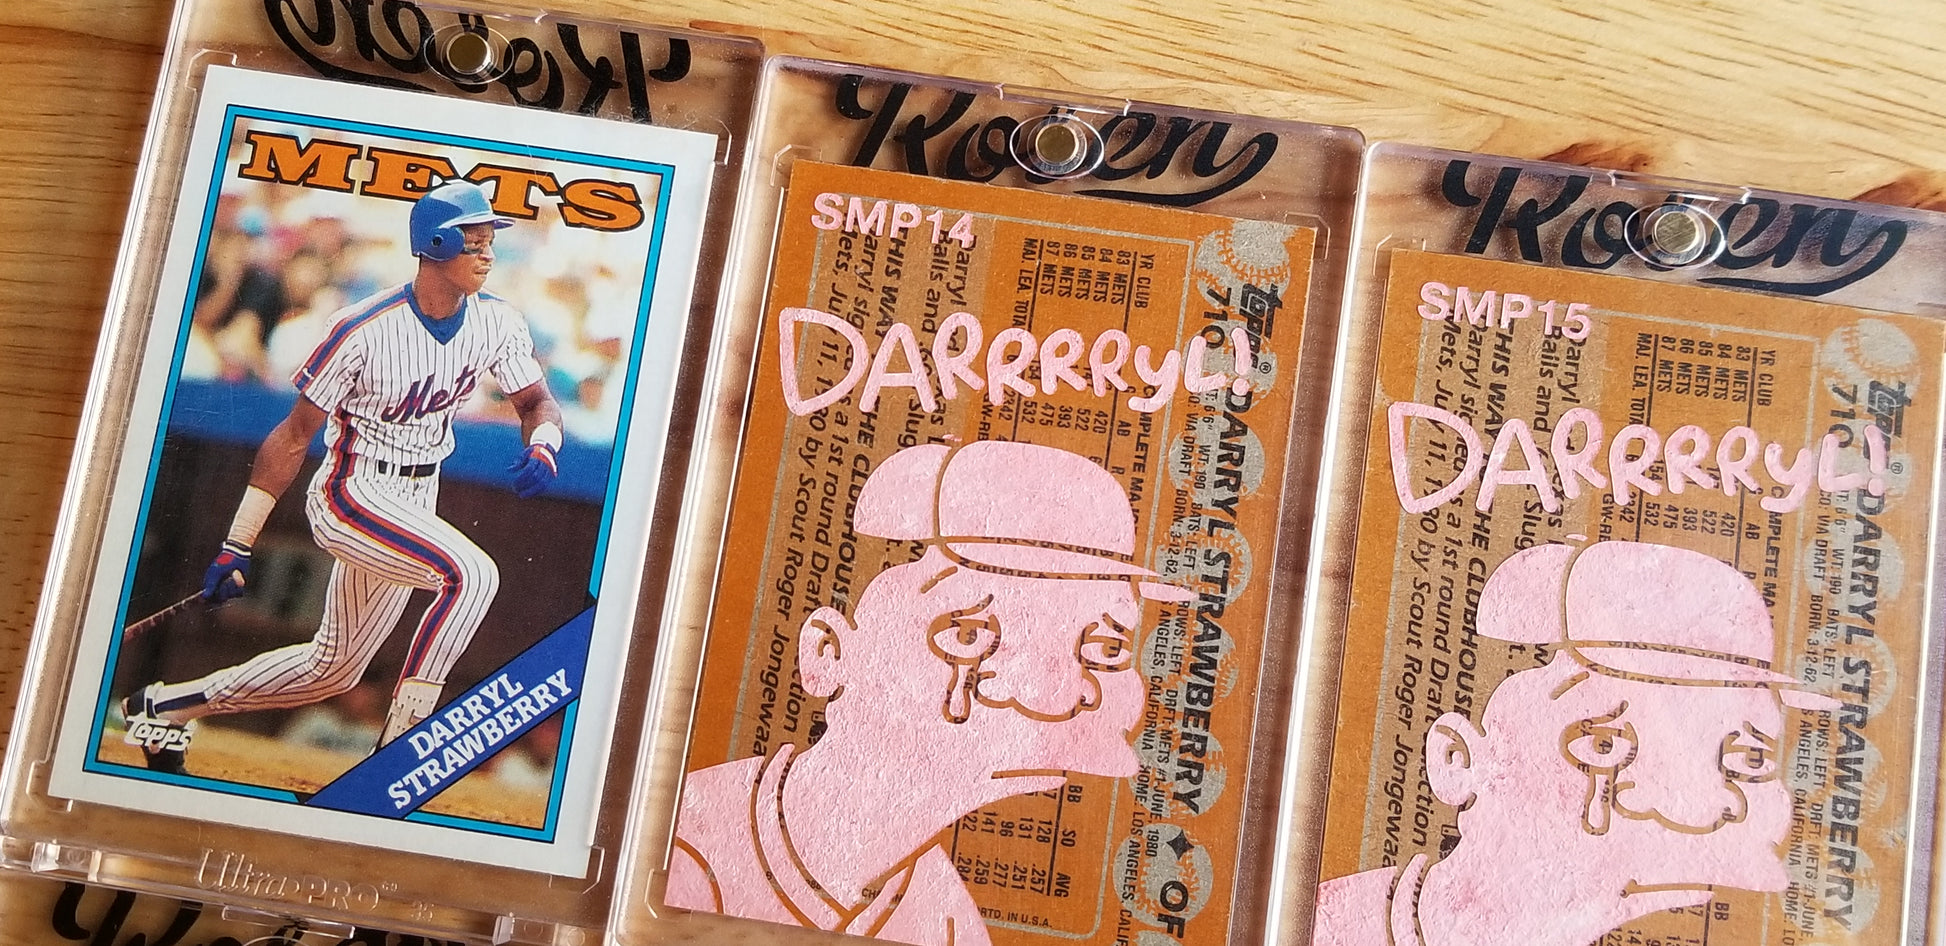 Baseball card art by Matthew Rosen - Gum Stick Collector Cards - Darrrryl